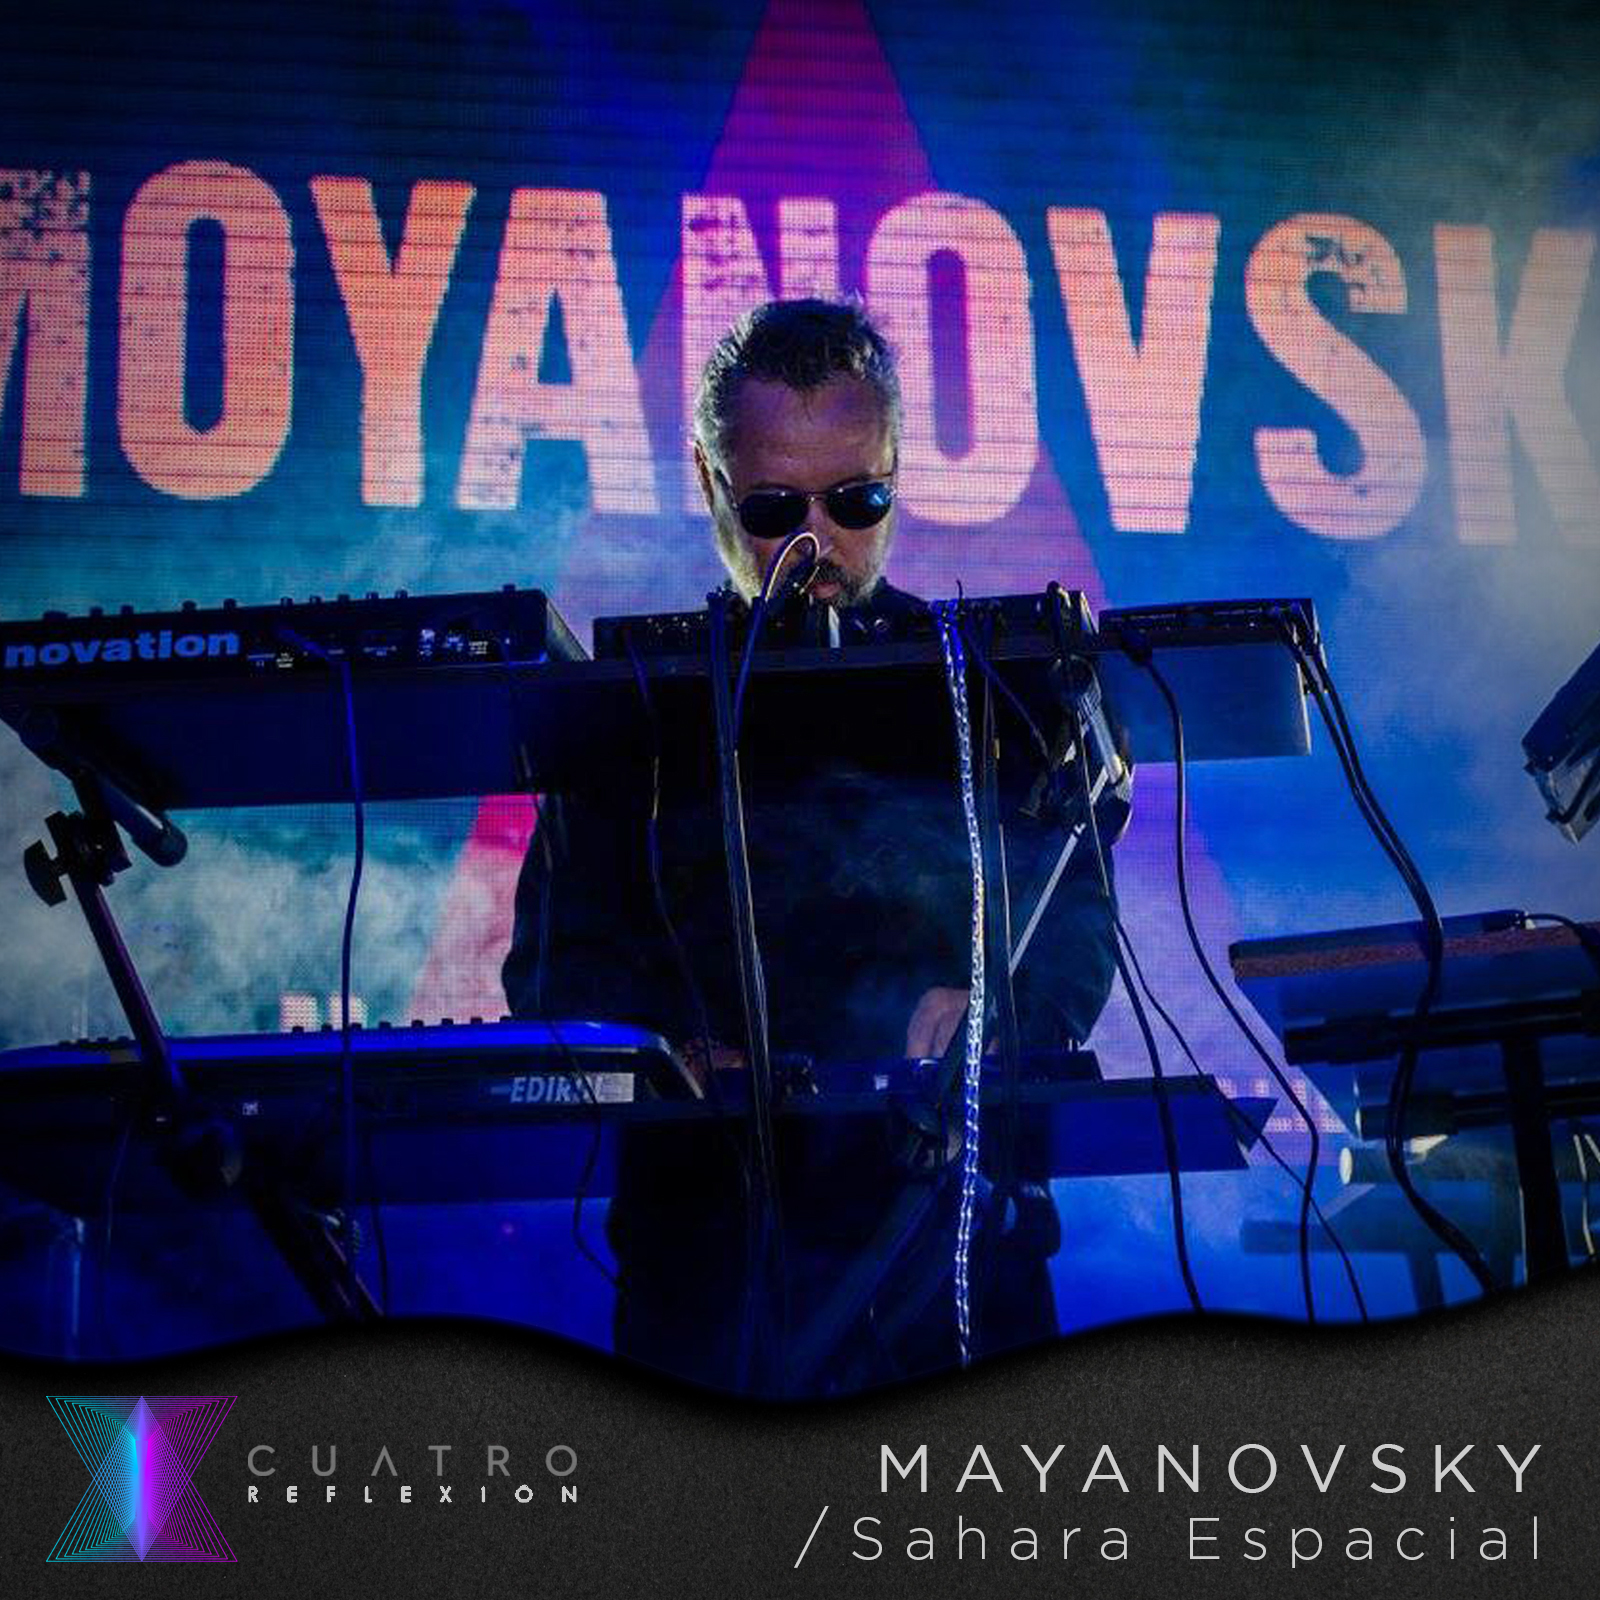 Mayanovsky